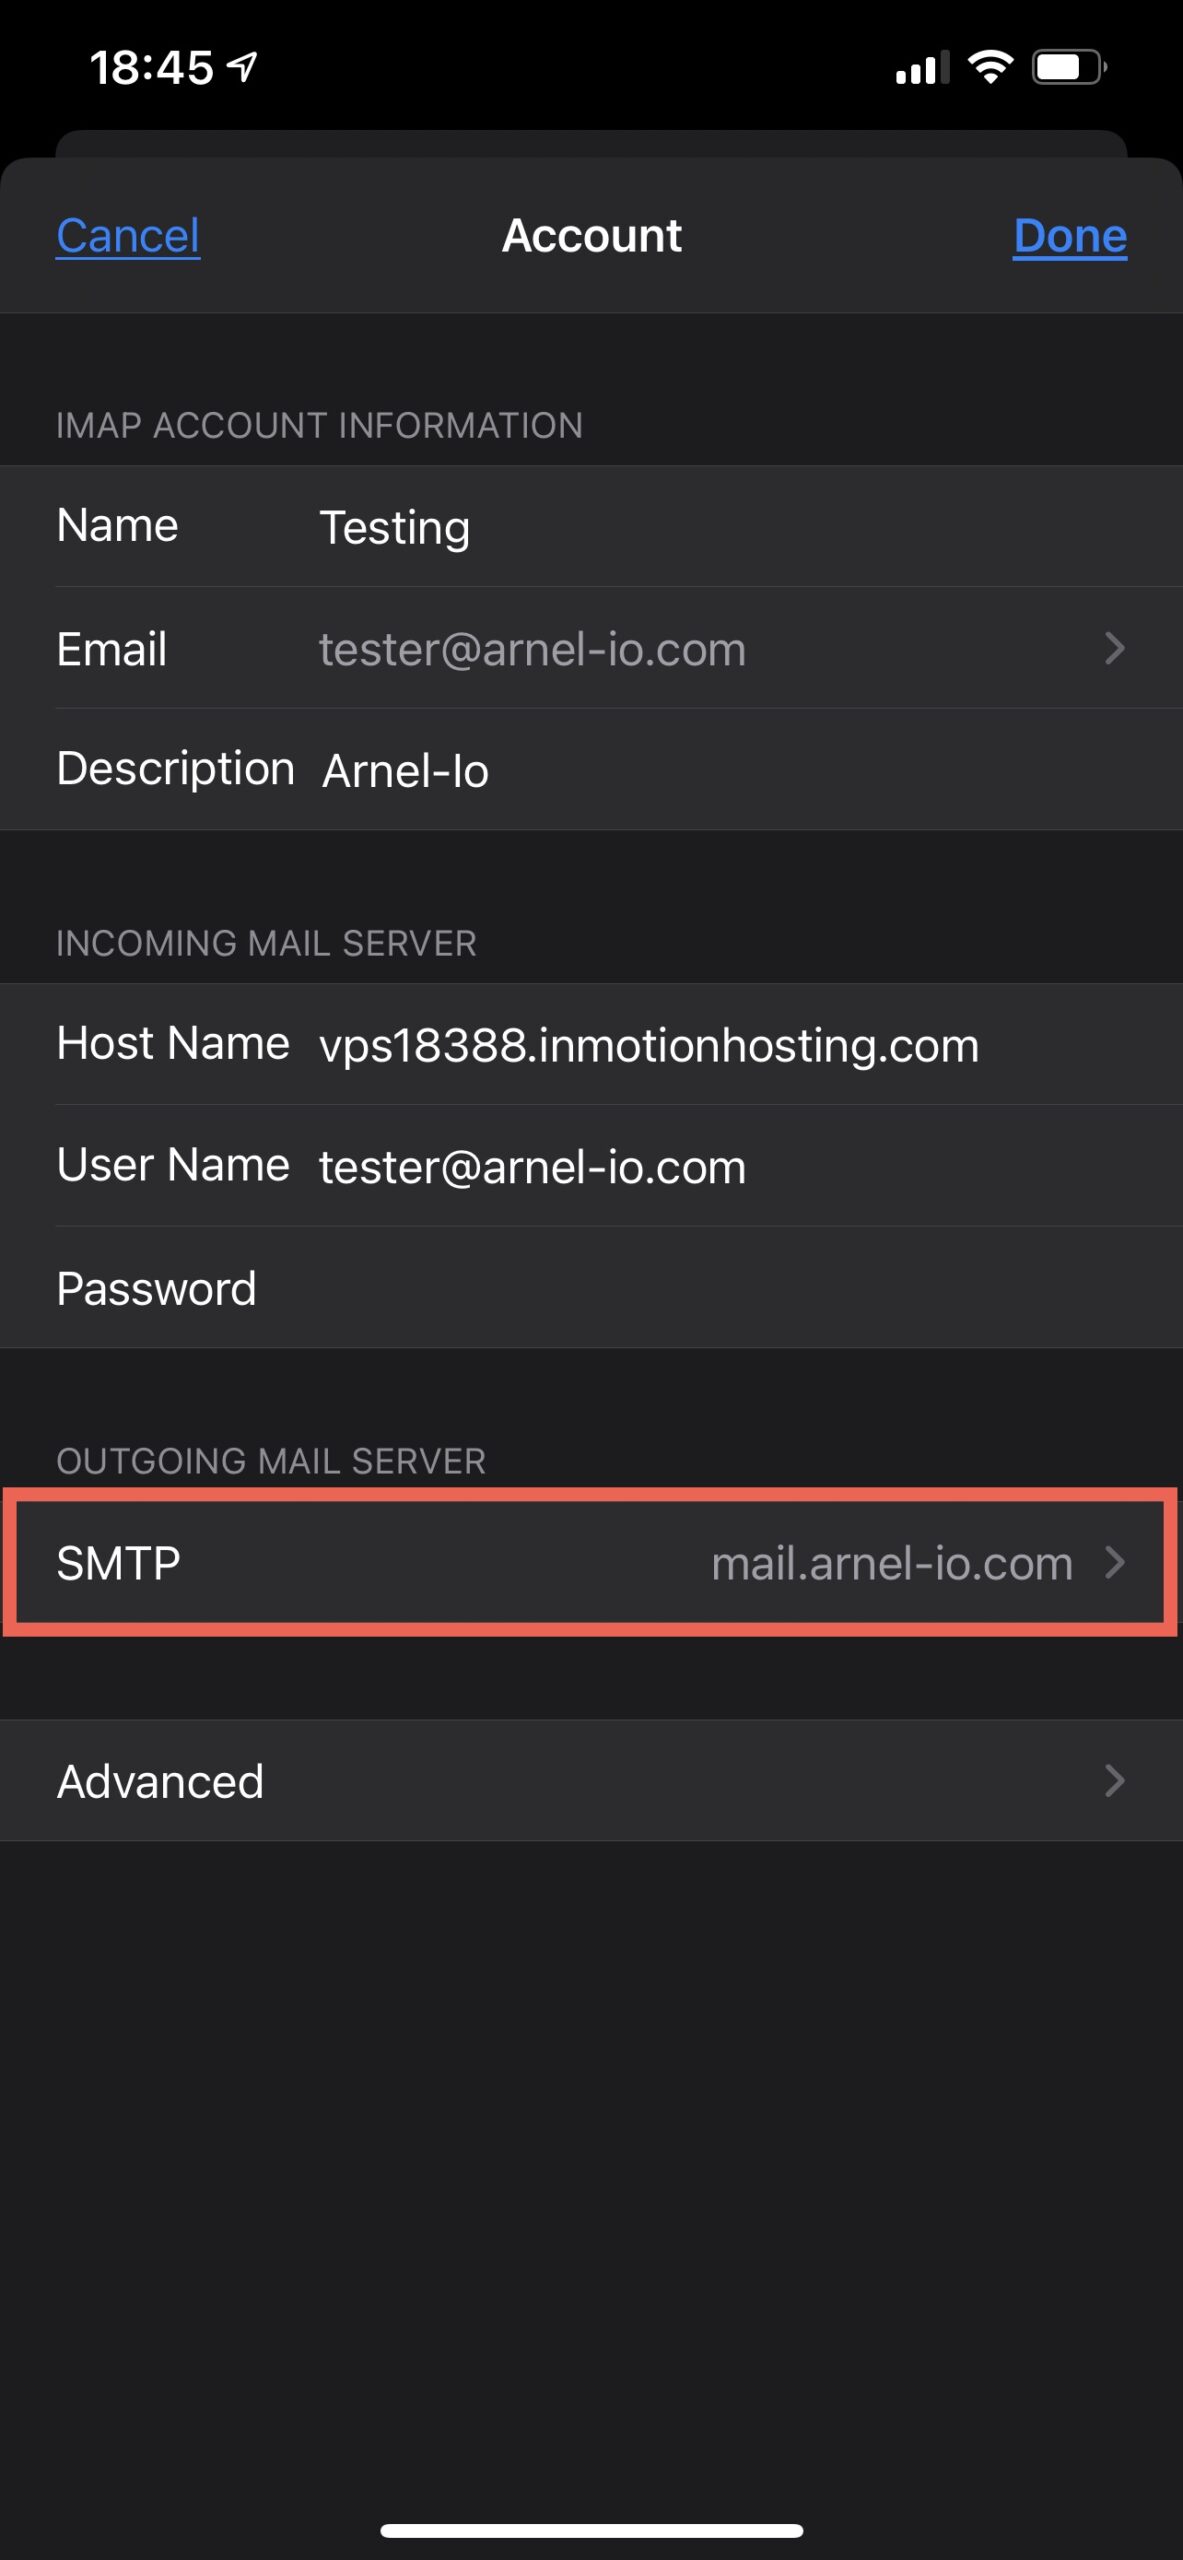 Select SMTP bar